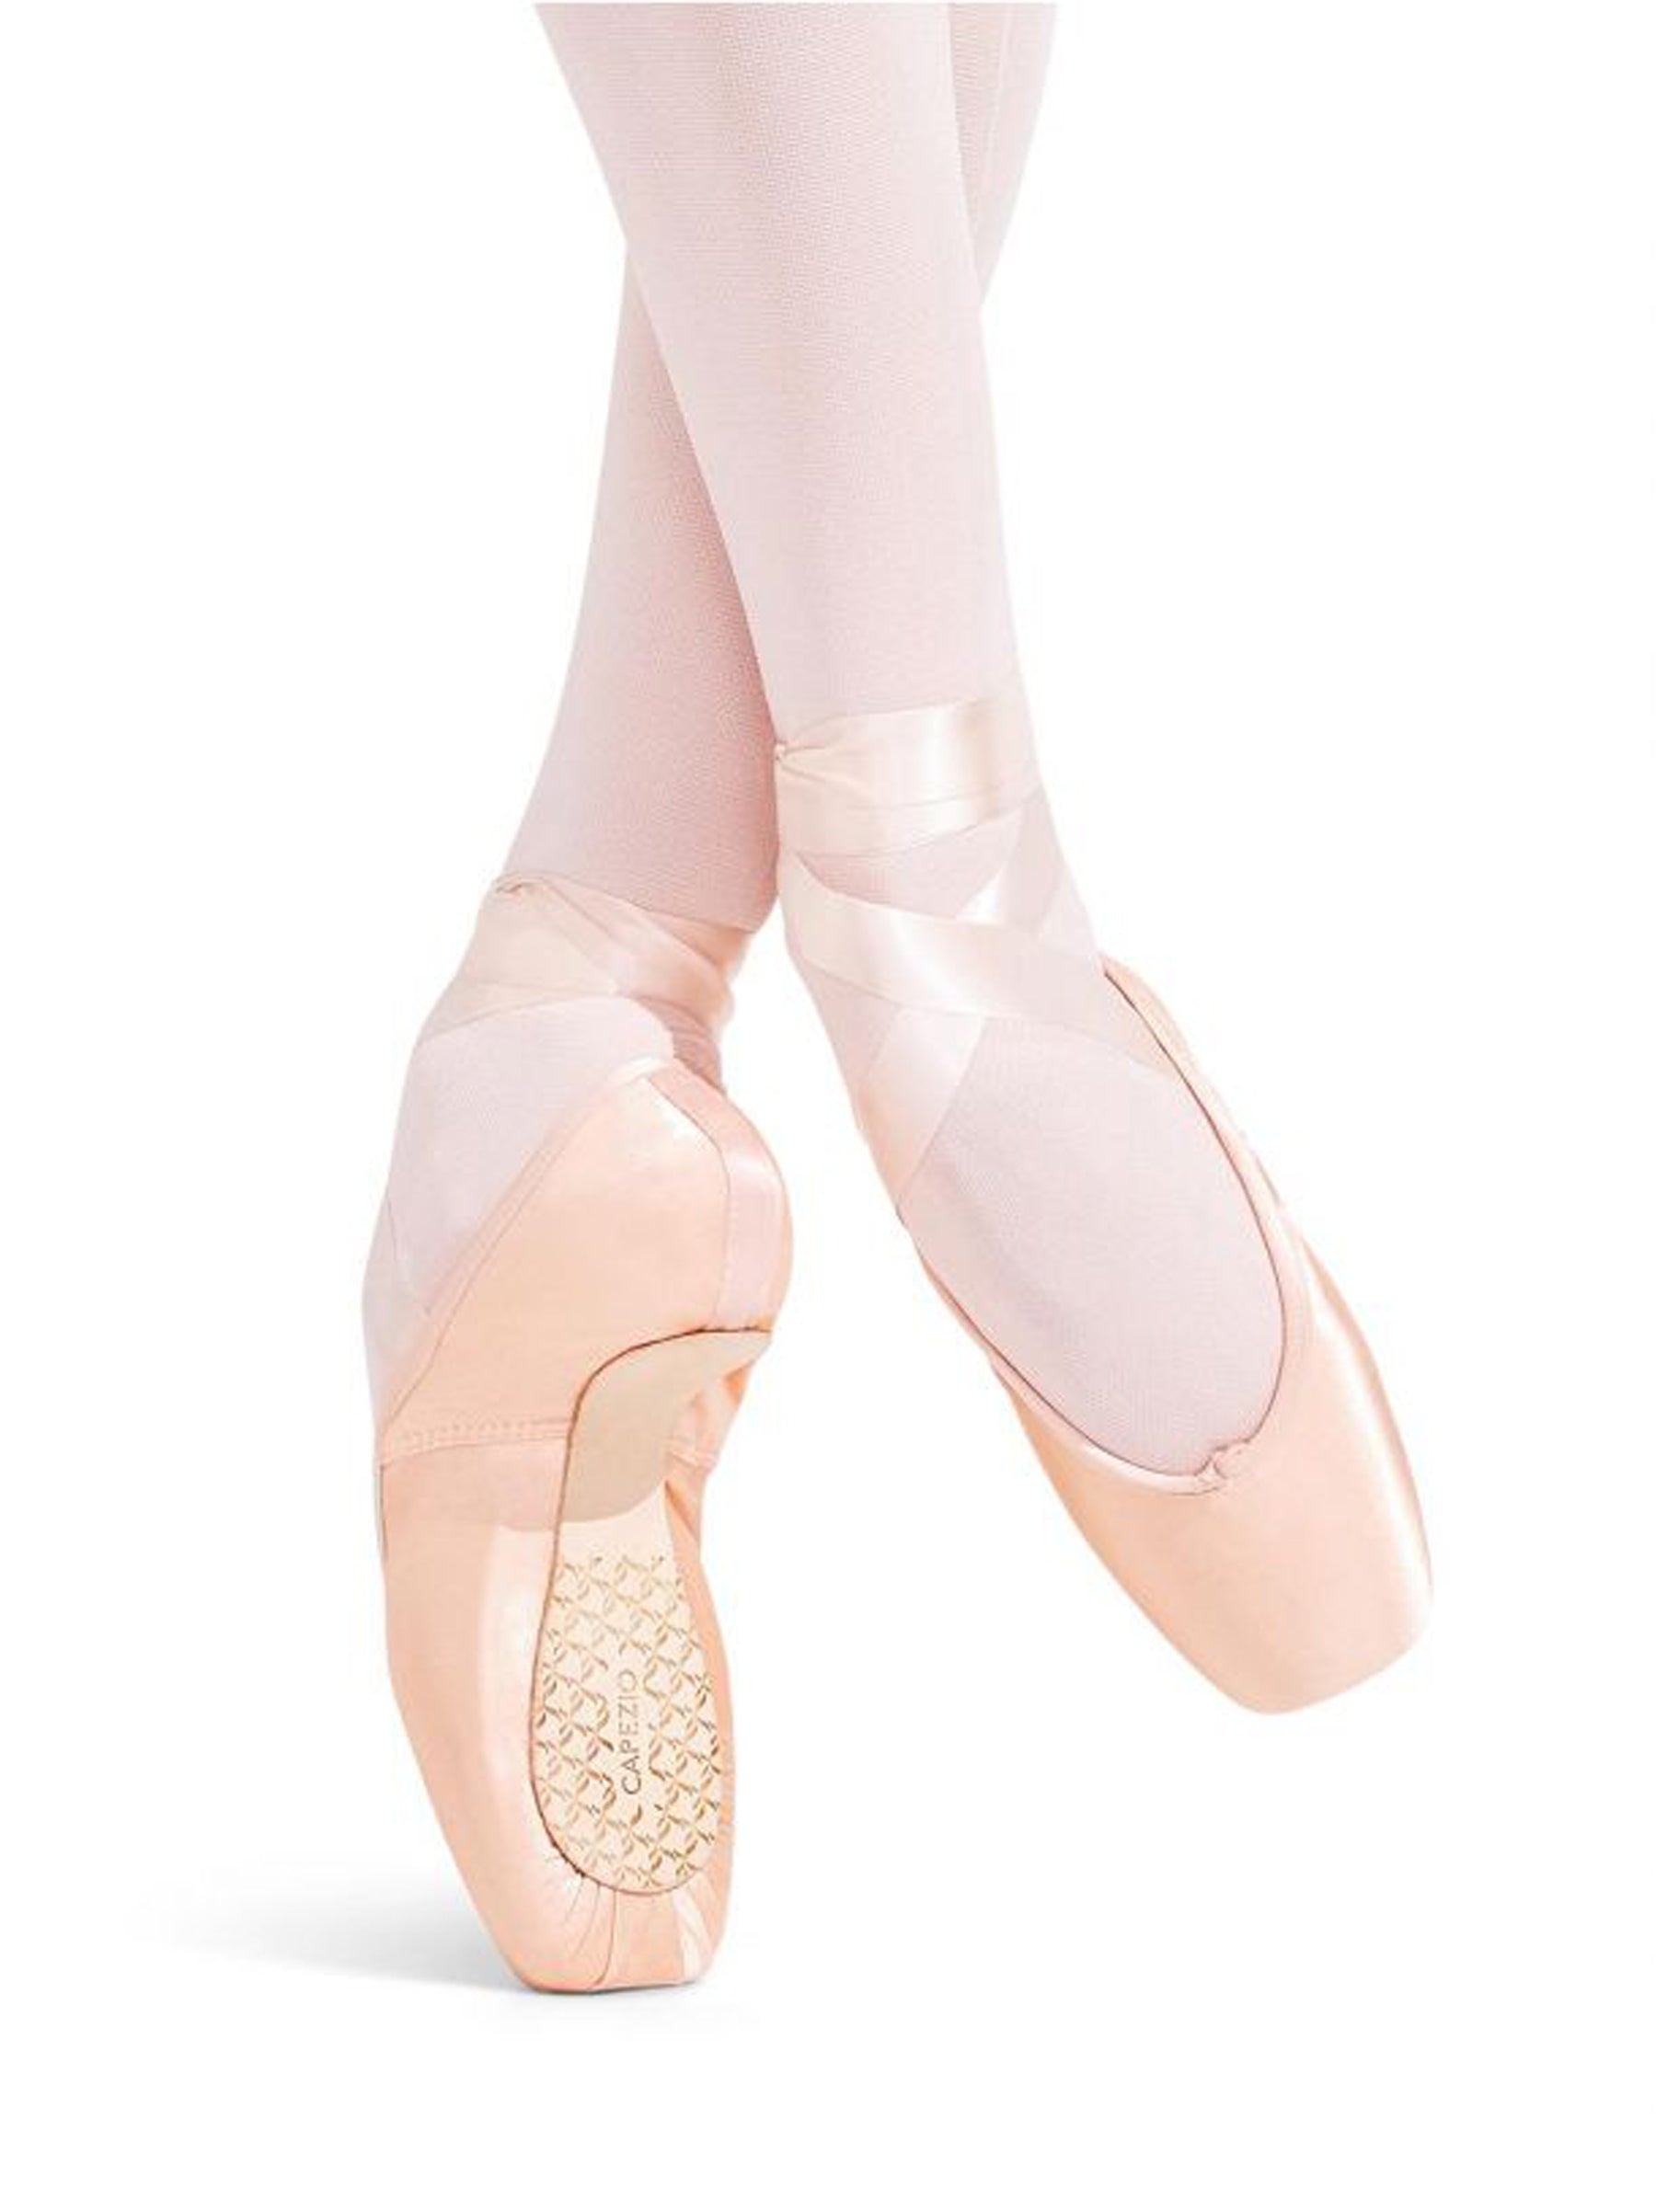 Calzado Niñas "Ballet" - Dance